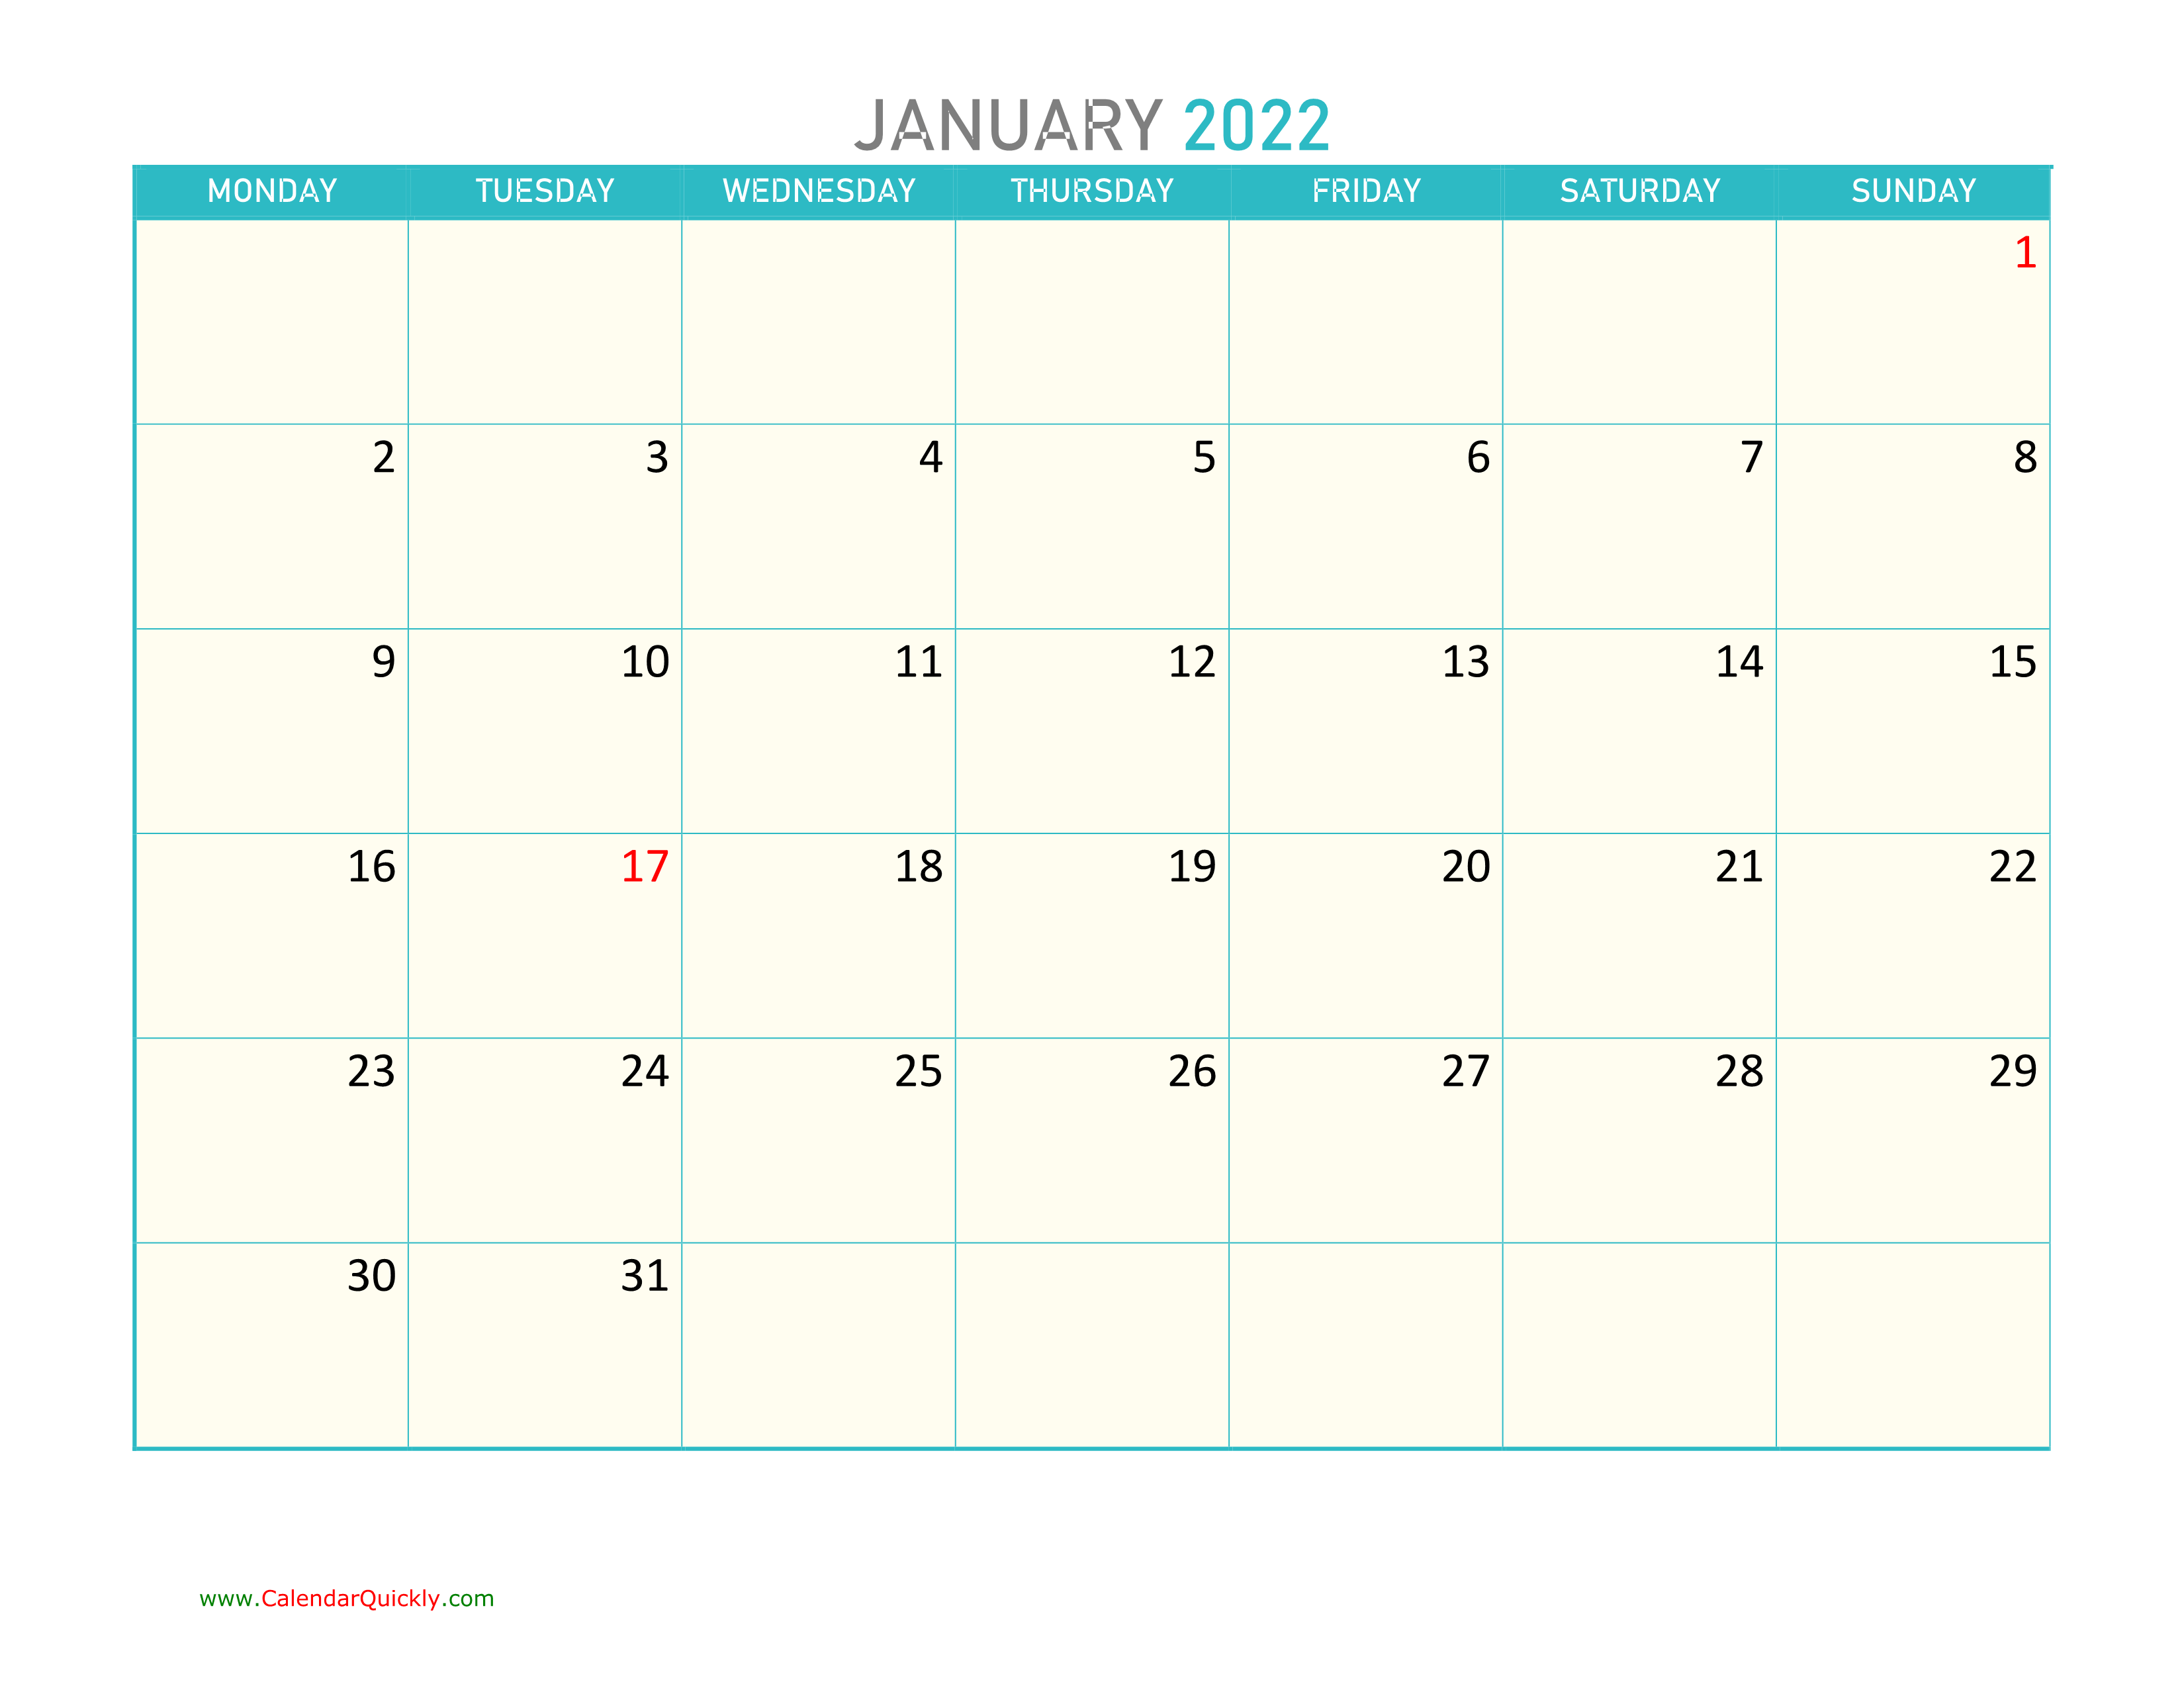 monthly-monday-2022-calendar-printable-calendar-quickly